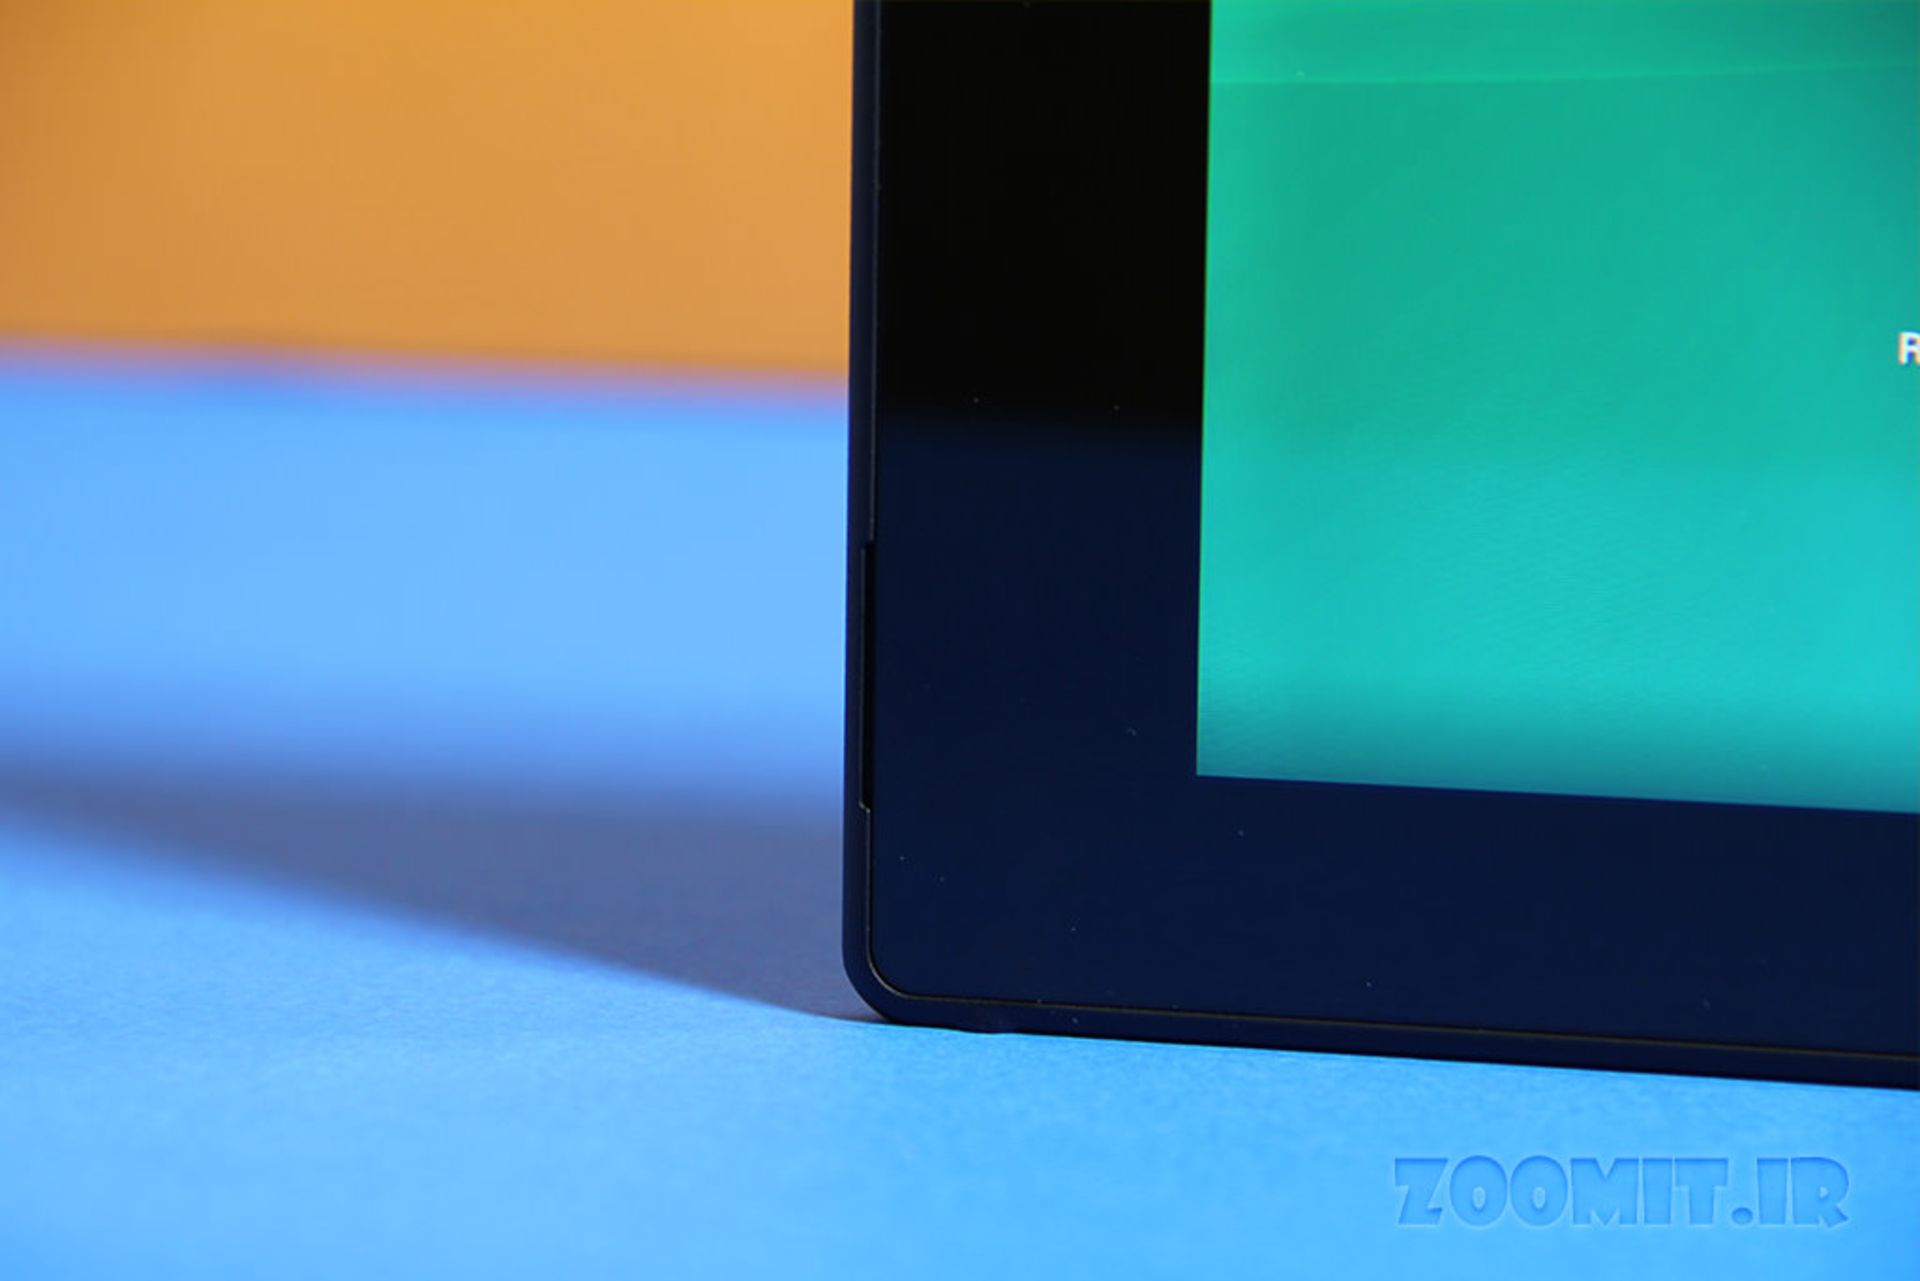 بررسی اکسپریا زد 2 تبلت سونی (Sony Xperia Z2 Tablet)